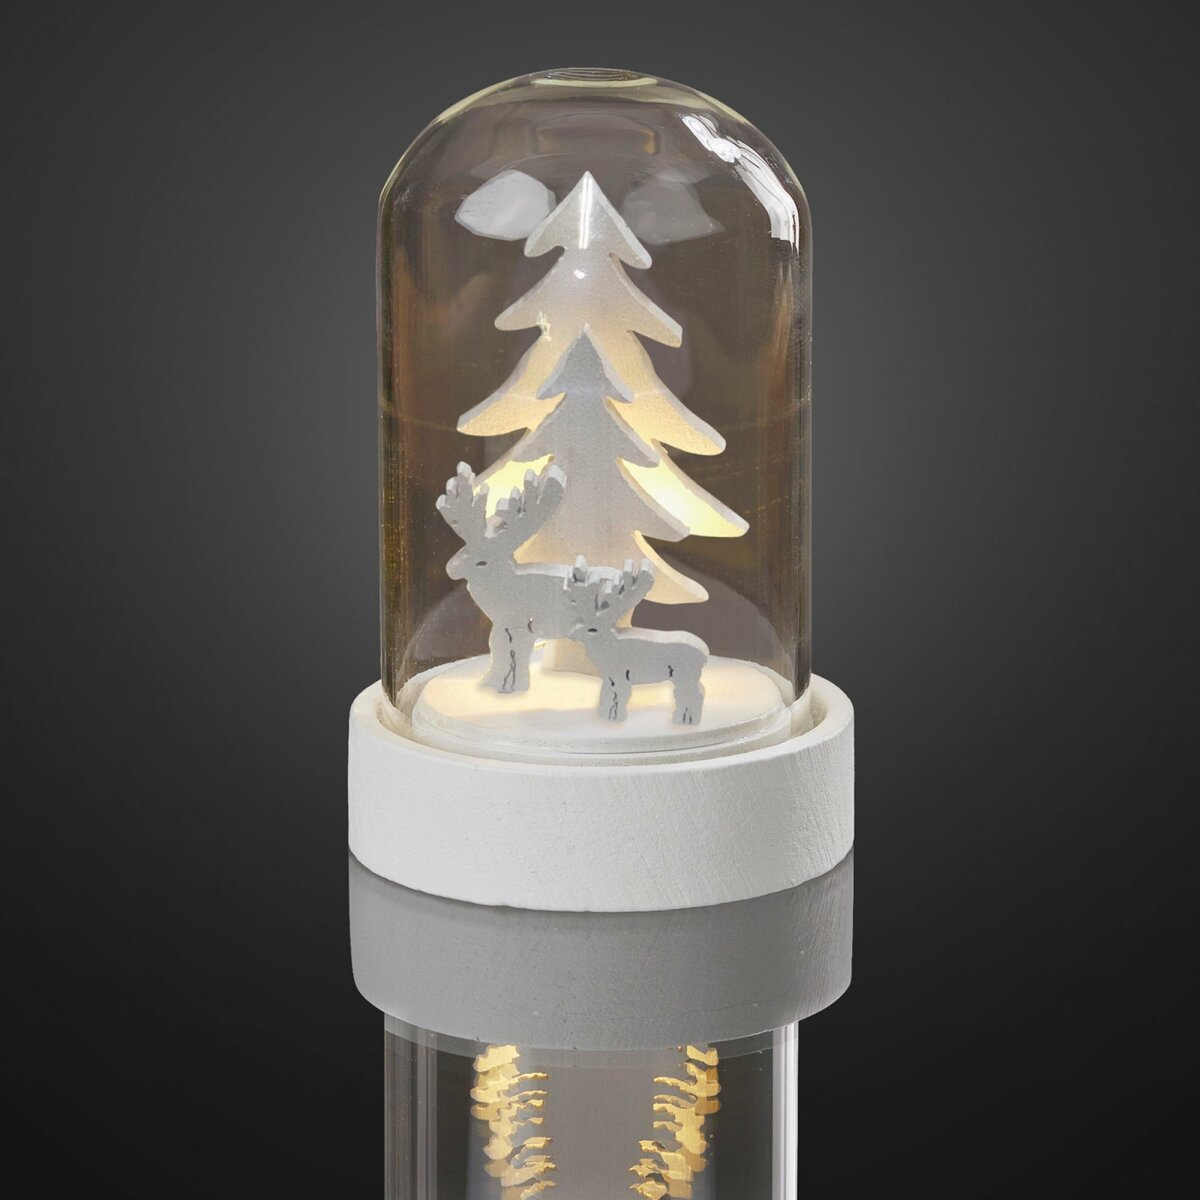 LED-Deko-Glocke mit Tannenbäumen und Rentieren, warm-weiße LEDs, batt